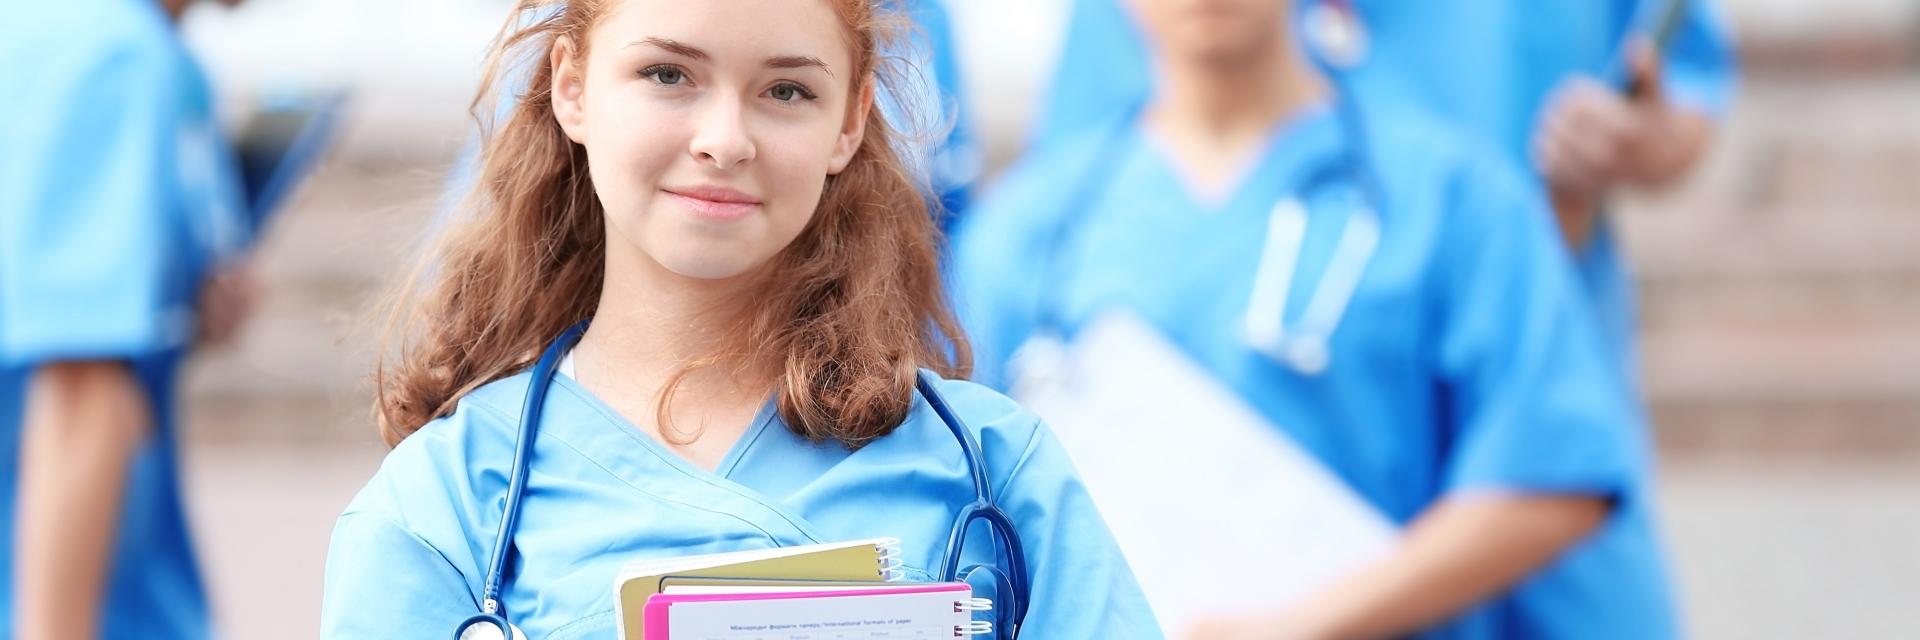 Jeune élève infirmière avec ses cahiers dans les bras